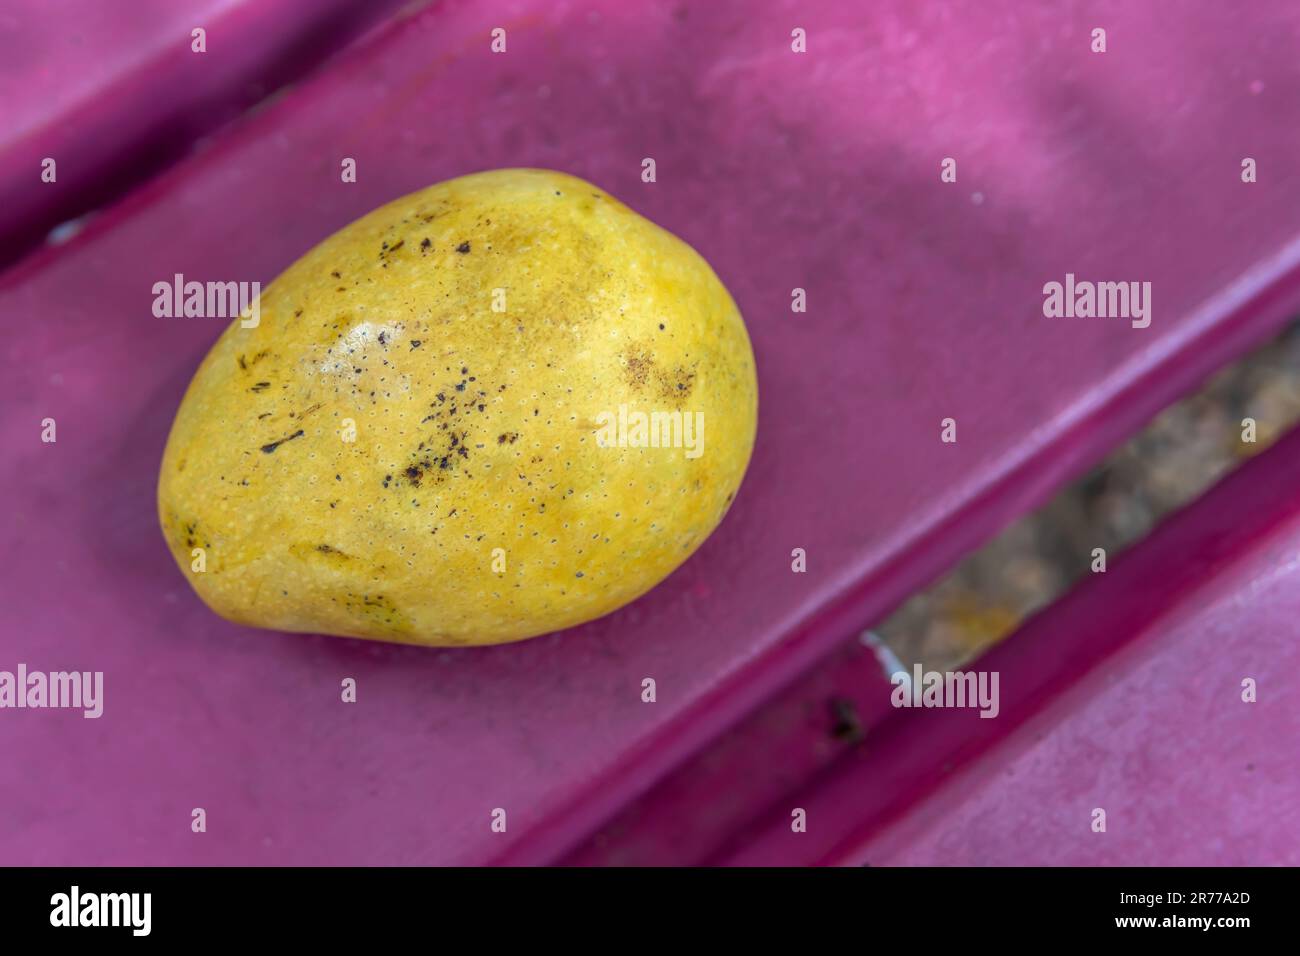 Un succoso mango giallo con morbida pelle baciata dal sole si trova con grazia su una panchina rosa in un vivace parco. Foto Stock